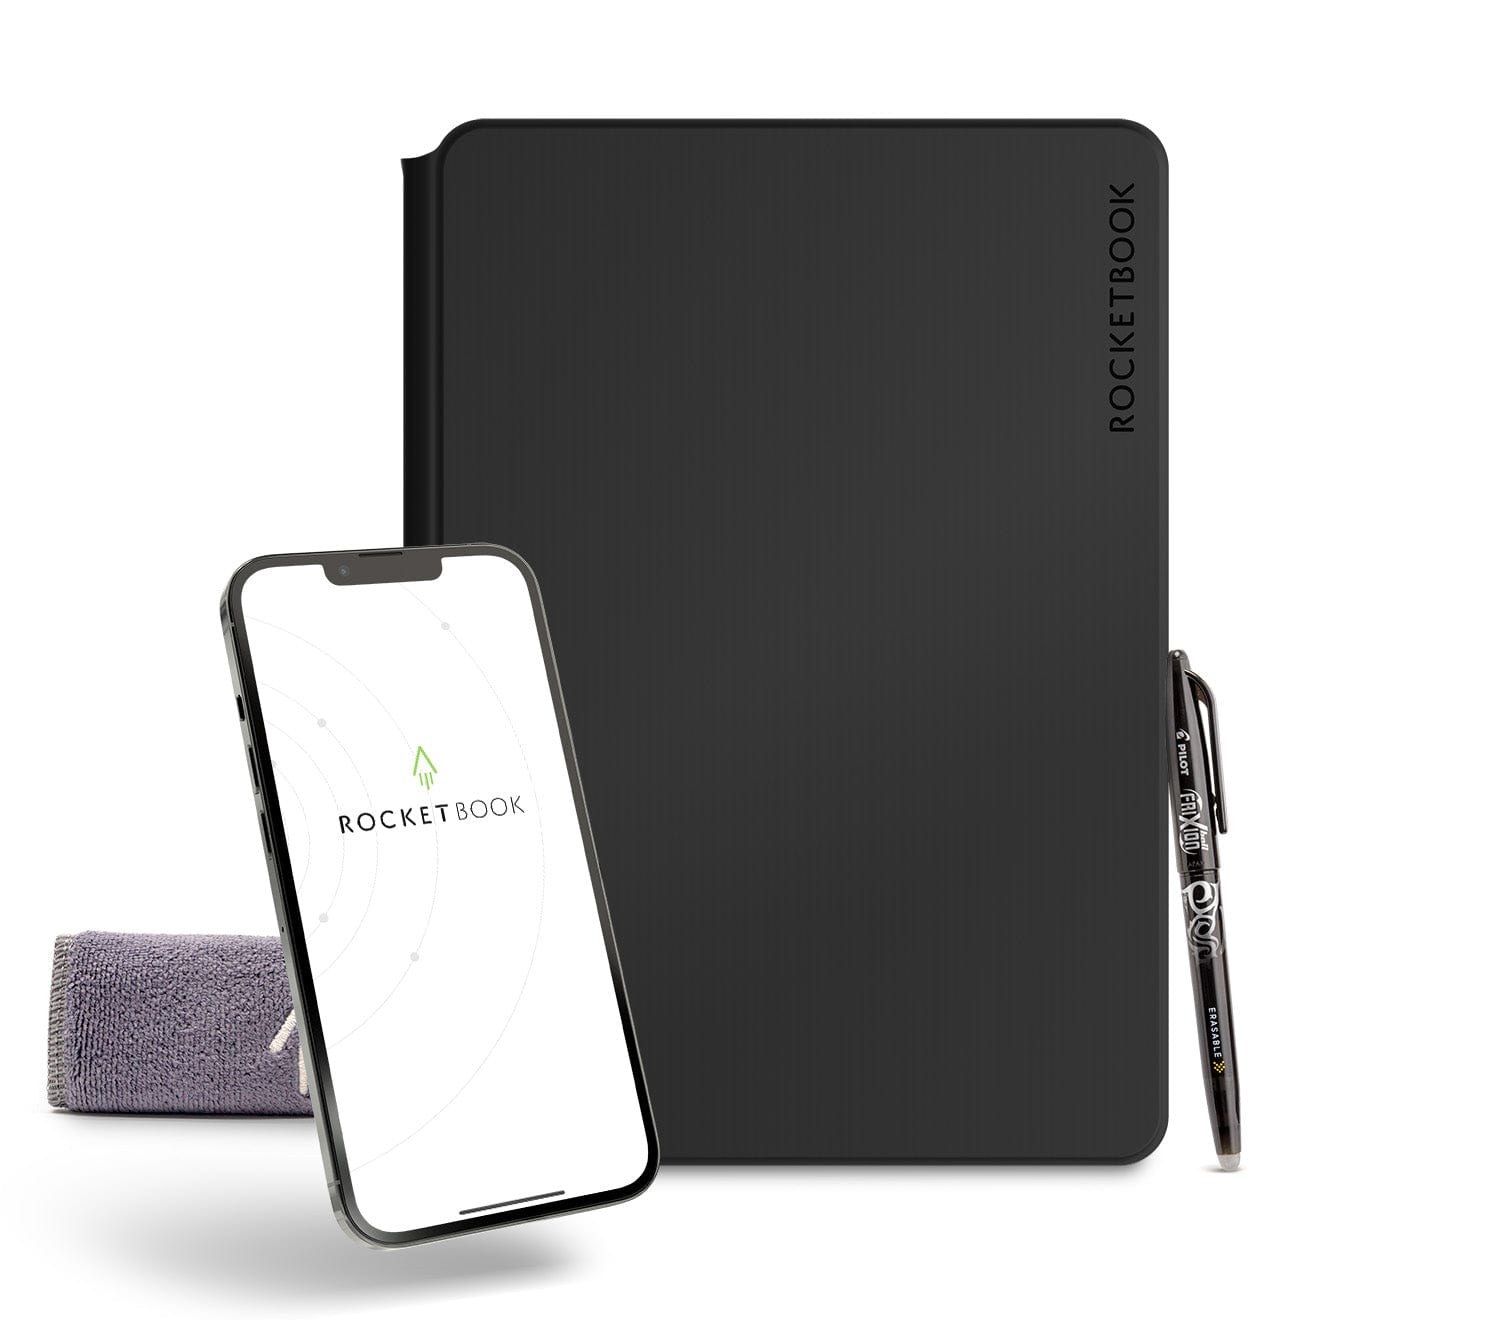 Rocketbook Smart Reusable Notebook Dot Grid Letter Size Spray Bottle Pen  Station